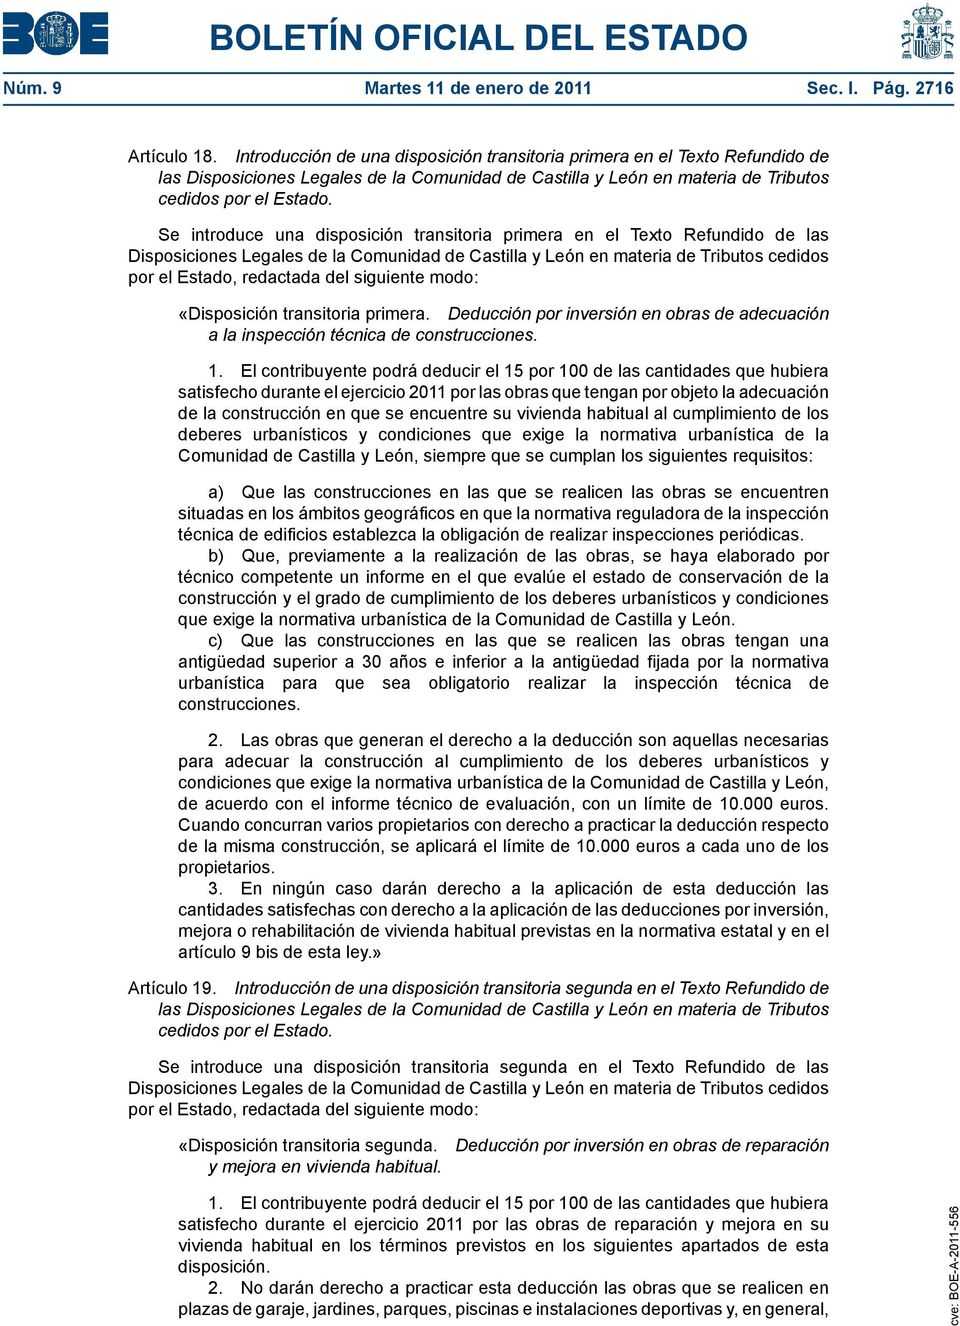 Se introduce una disposición transitoria primera en el Texto Refundido de las Disposiciones Legales de la Comunidad de Castilla y León en materia de Tributos cedidos por el Estado, redactada del